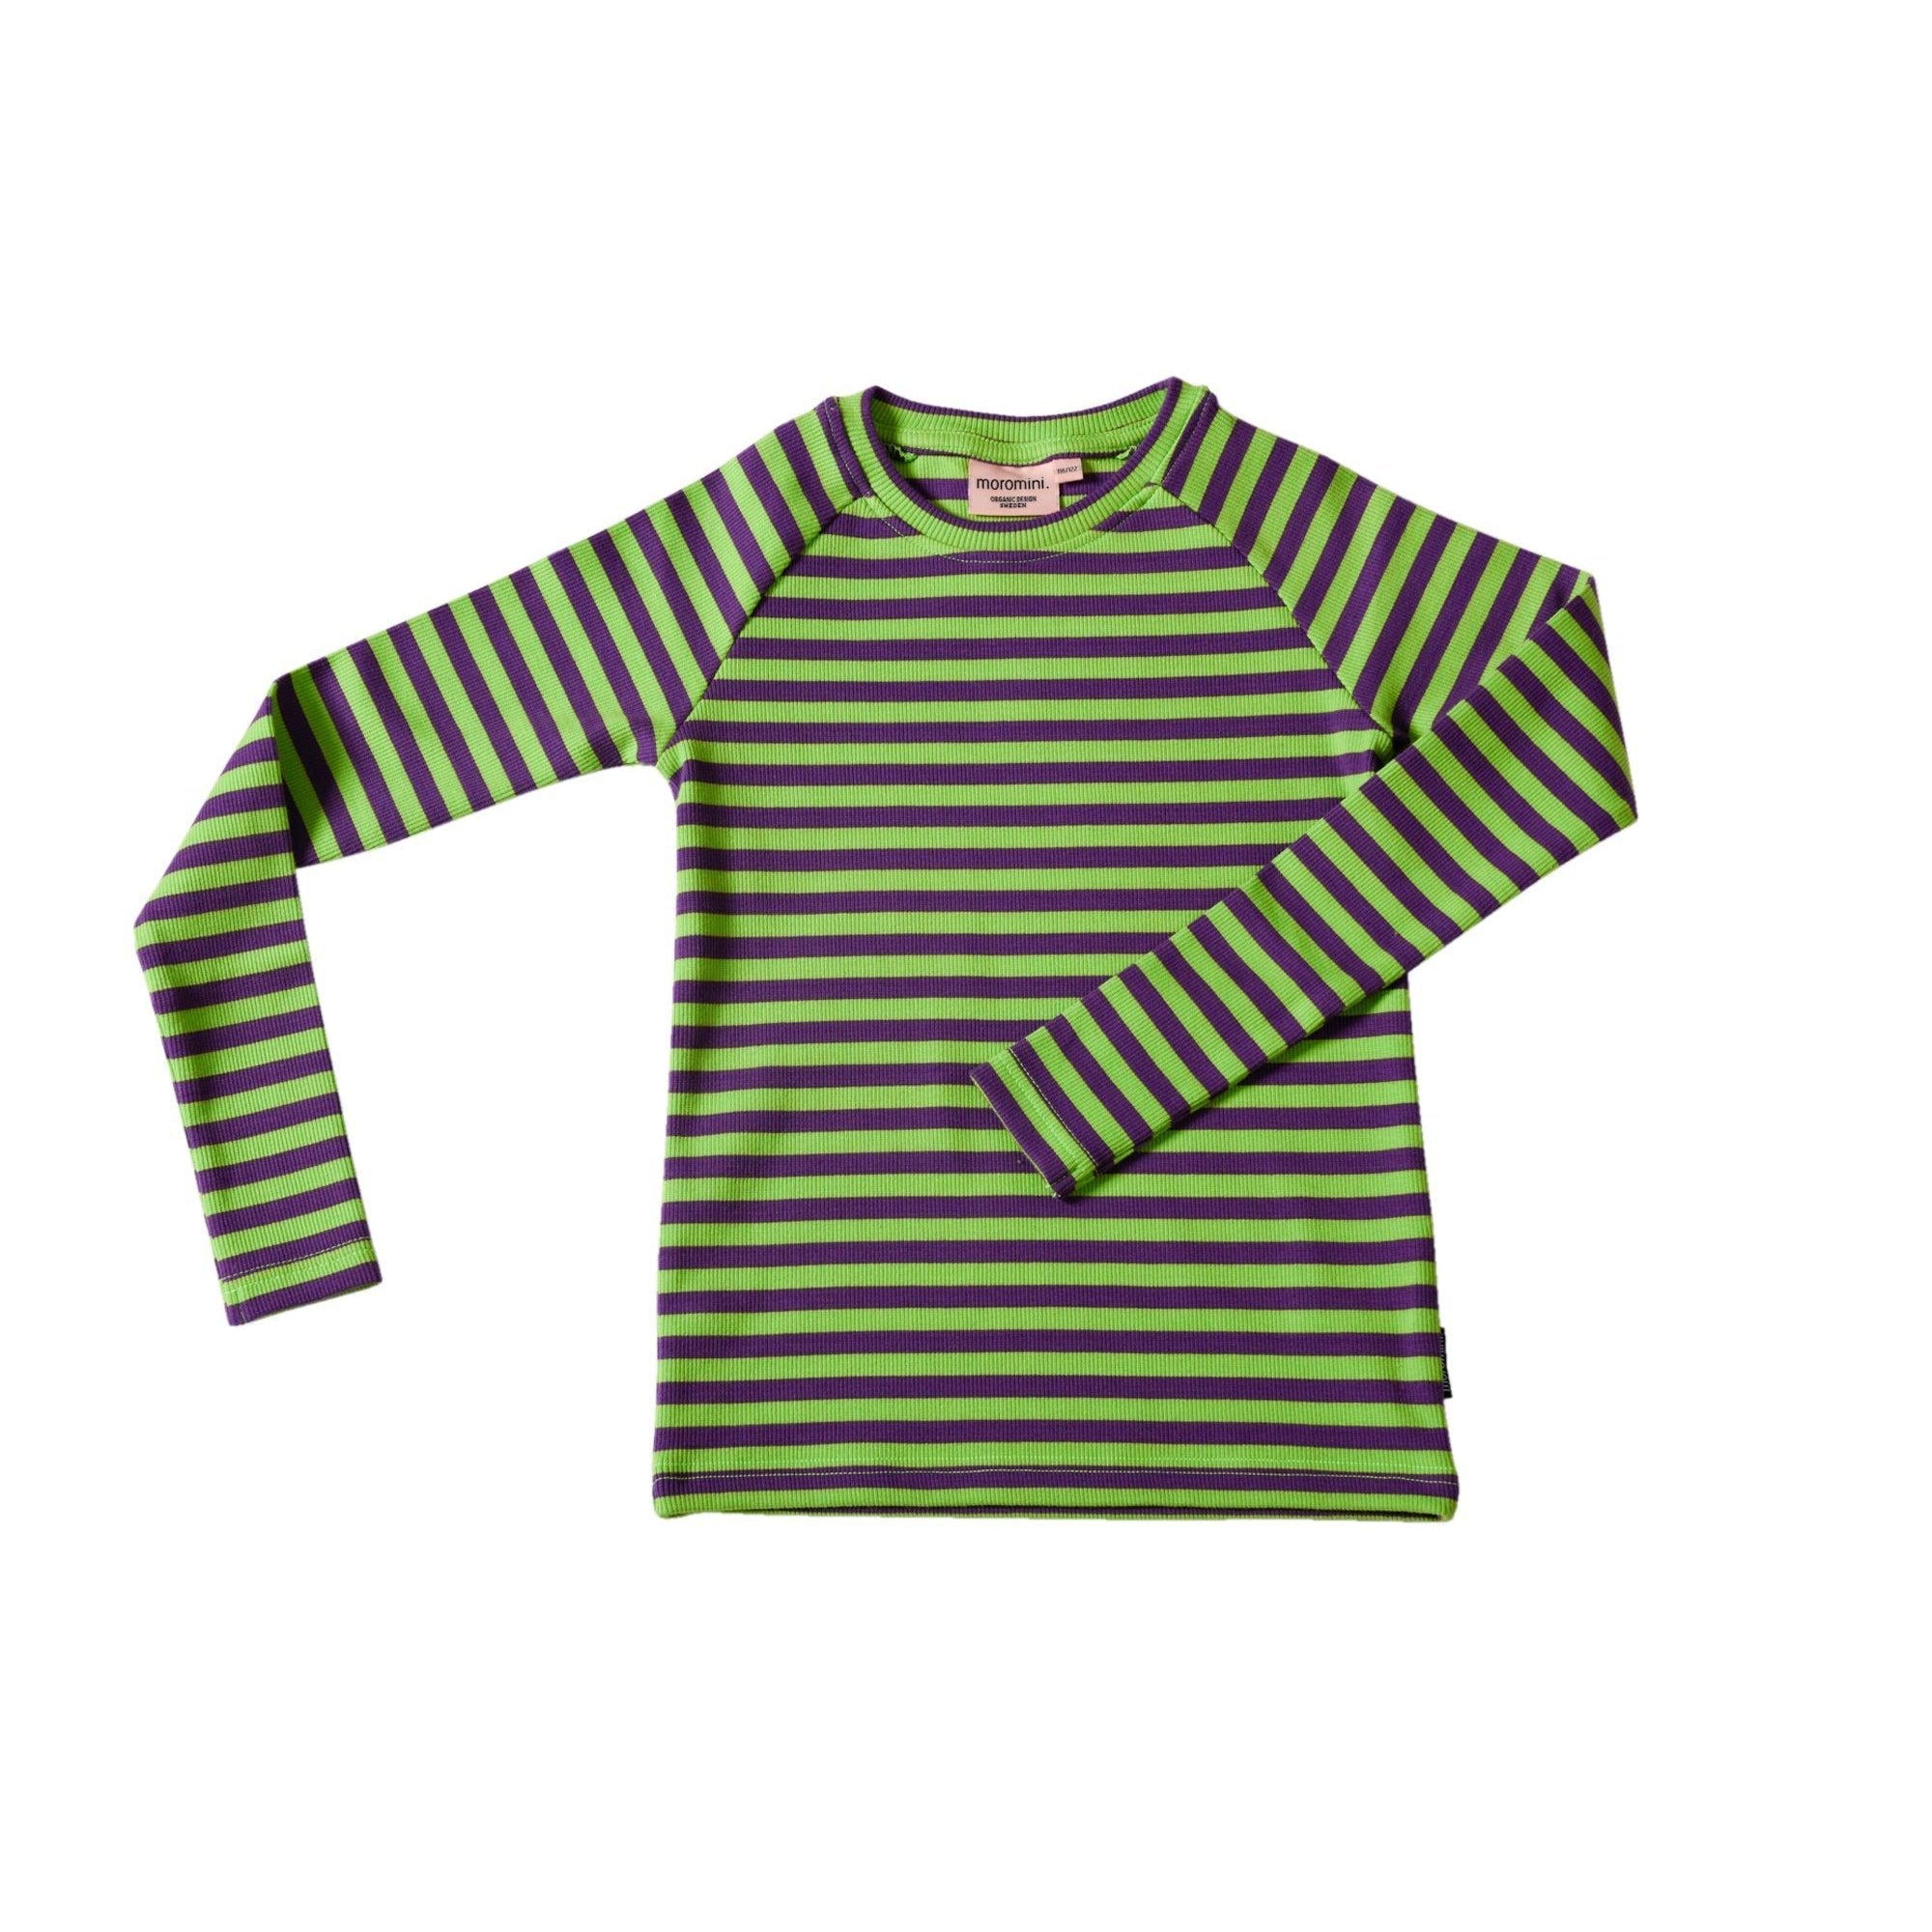 Moromini - Purple and Green Ribbed Raglan Sweater (4-5 Years)